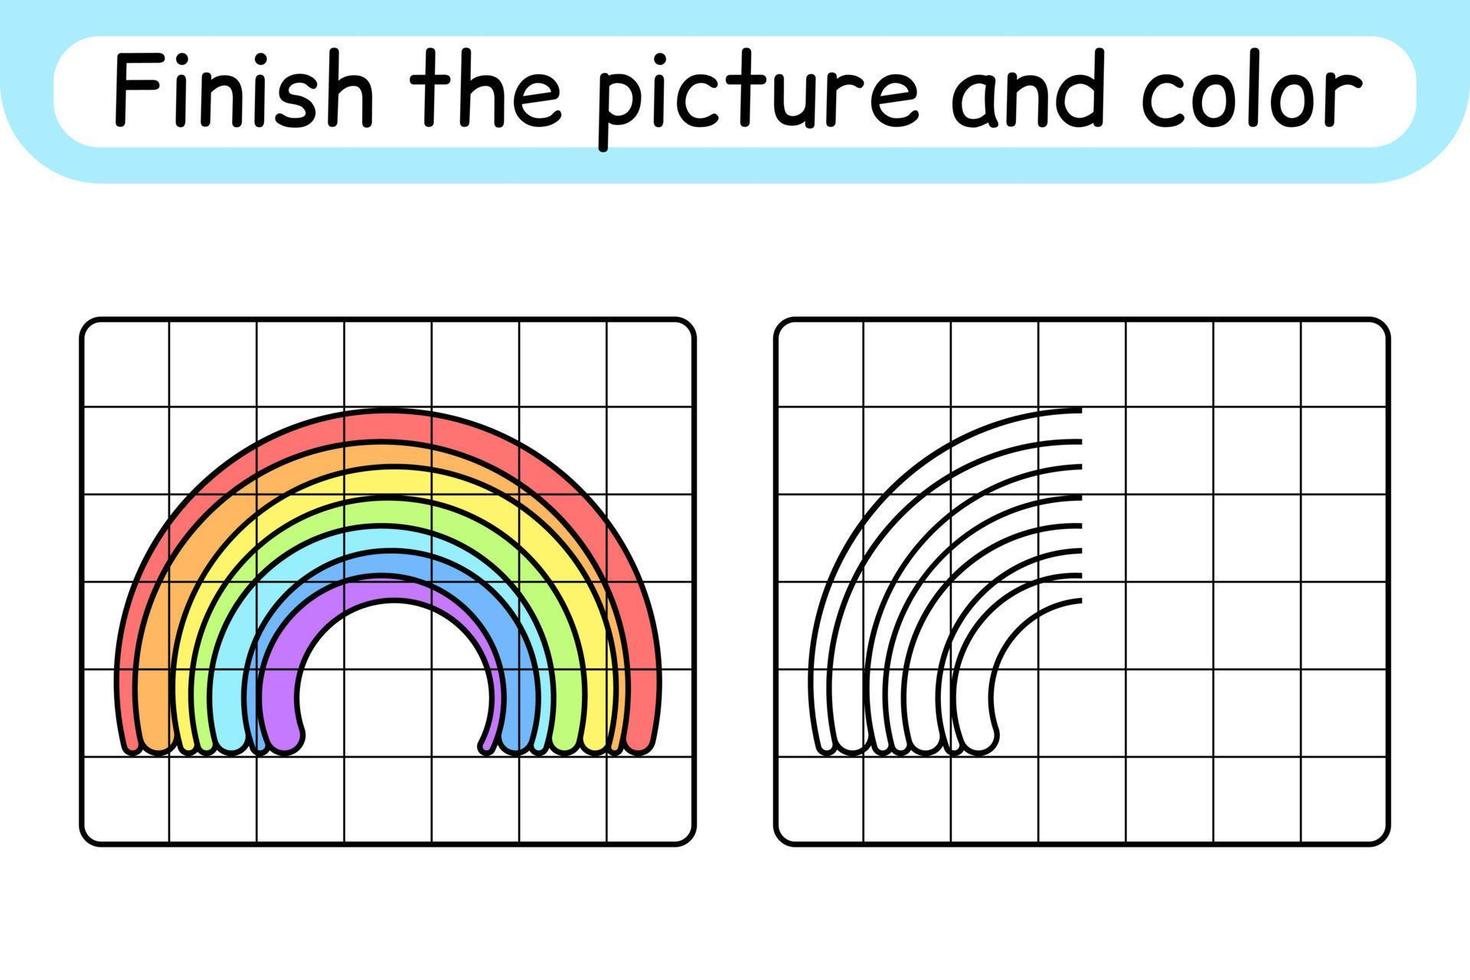 Completa la imagen del arcoíris. copiar la imagen y el color. terminar la imagen. libro de colorear. juego educativo de ejercicios de dibujo para niños vector